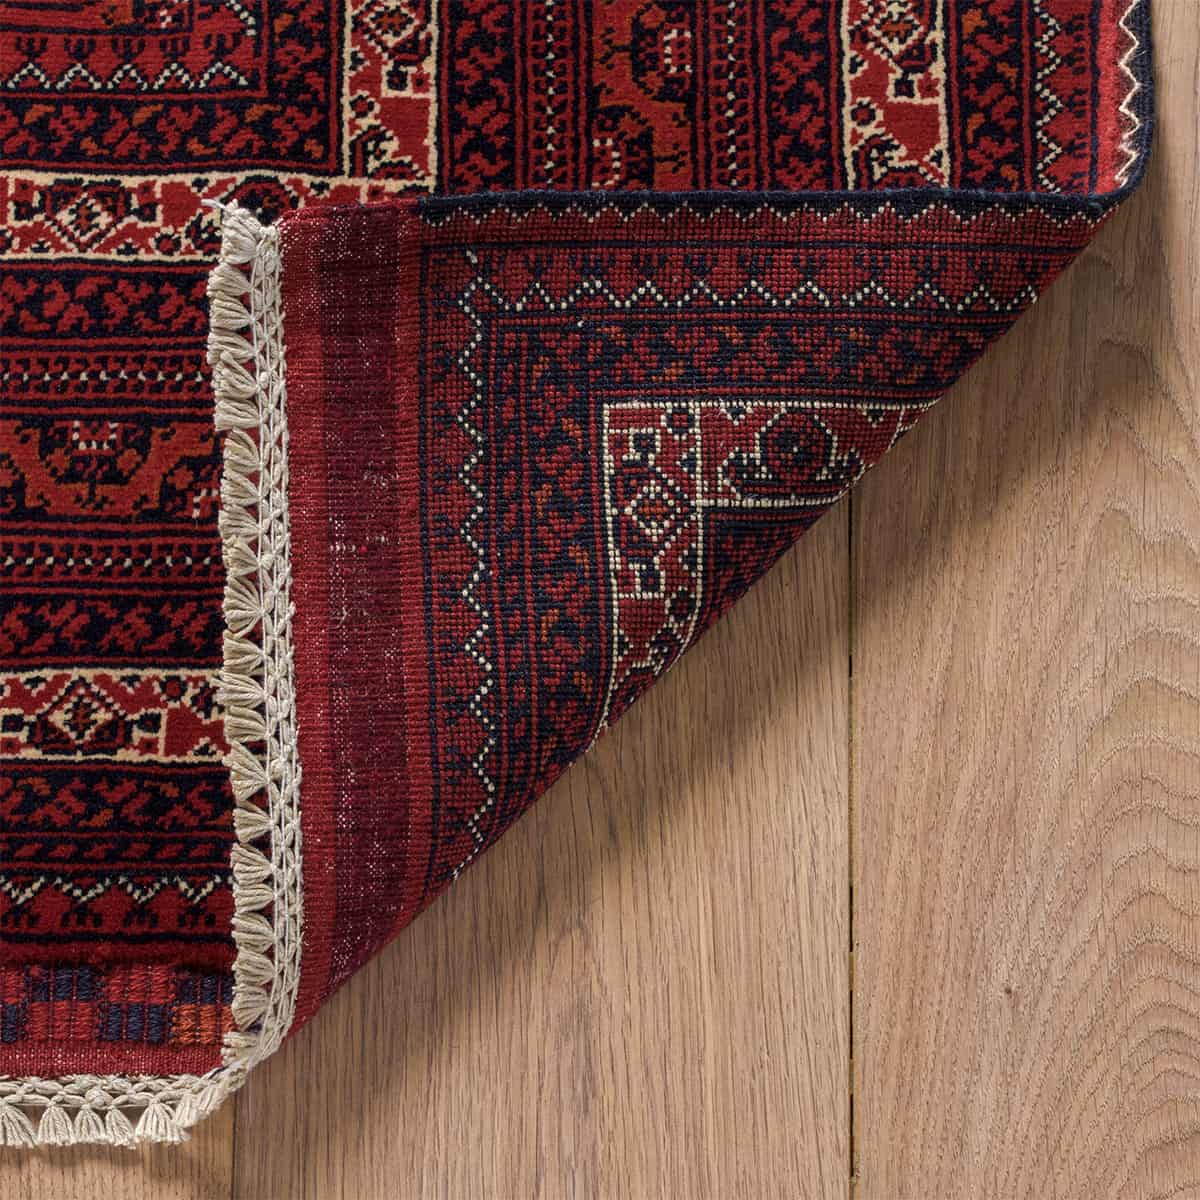 שטיח אפגני באשיר 00 אדום 290*204